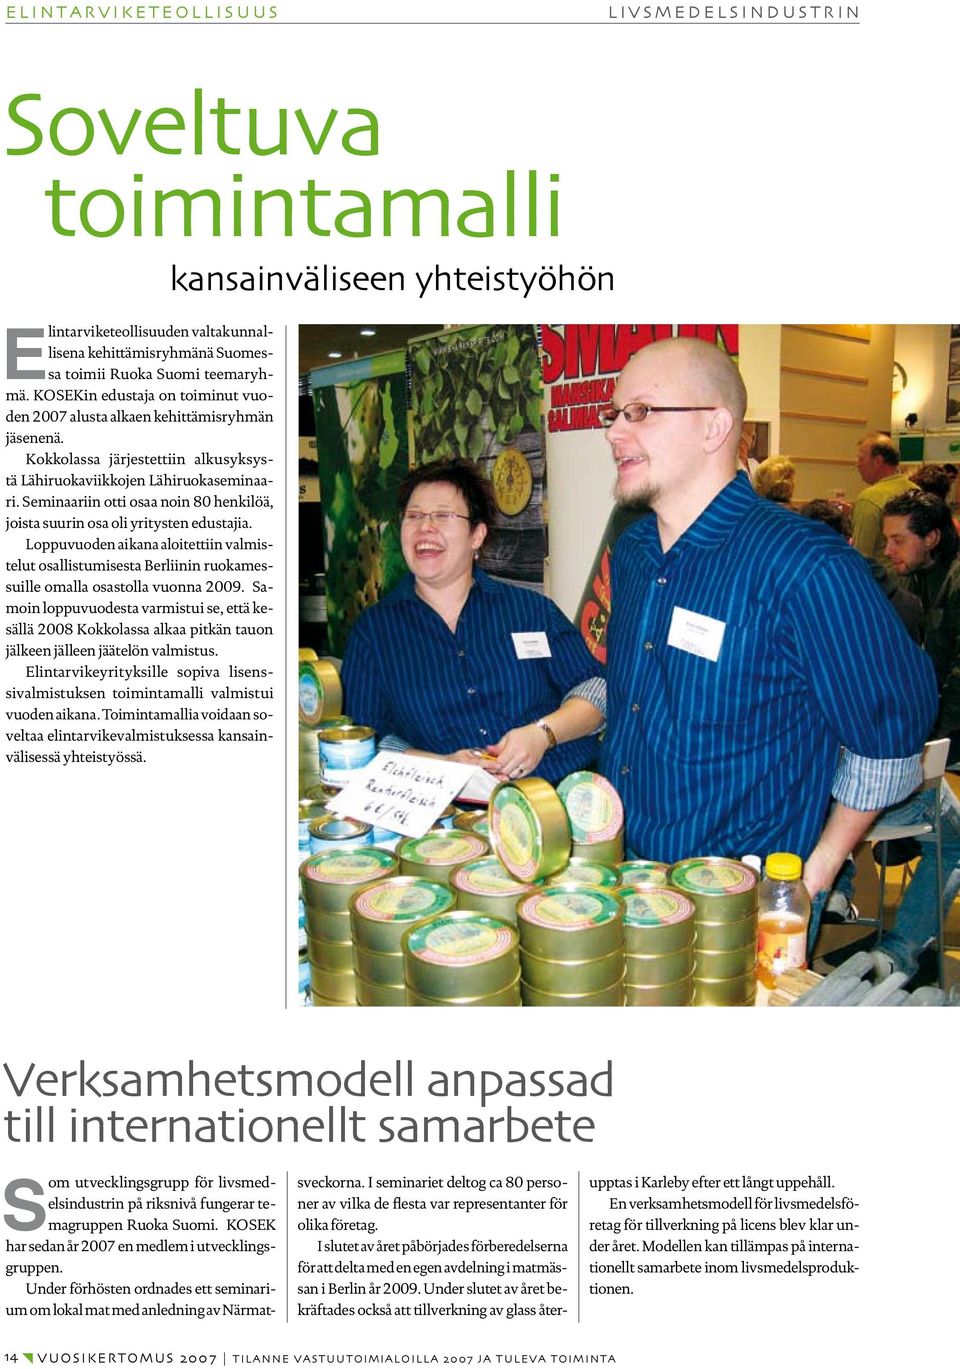 Seminaariin otti osaa noin 80 henkilöä, joista suurin osa oli yritysten edustajia. Loppuvuoden aikana aloitettiin valmistelut osallistumisesta Berliinin ruokamessuille omalla osastolla vuonna 2009.